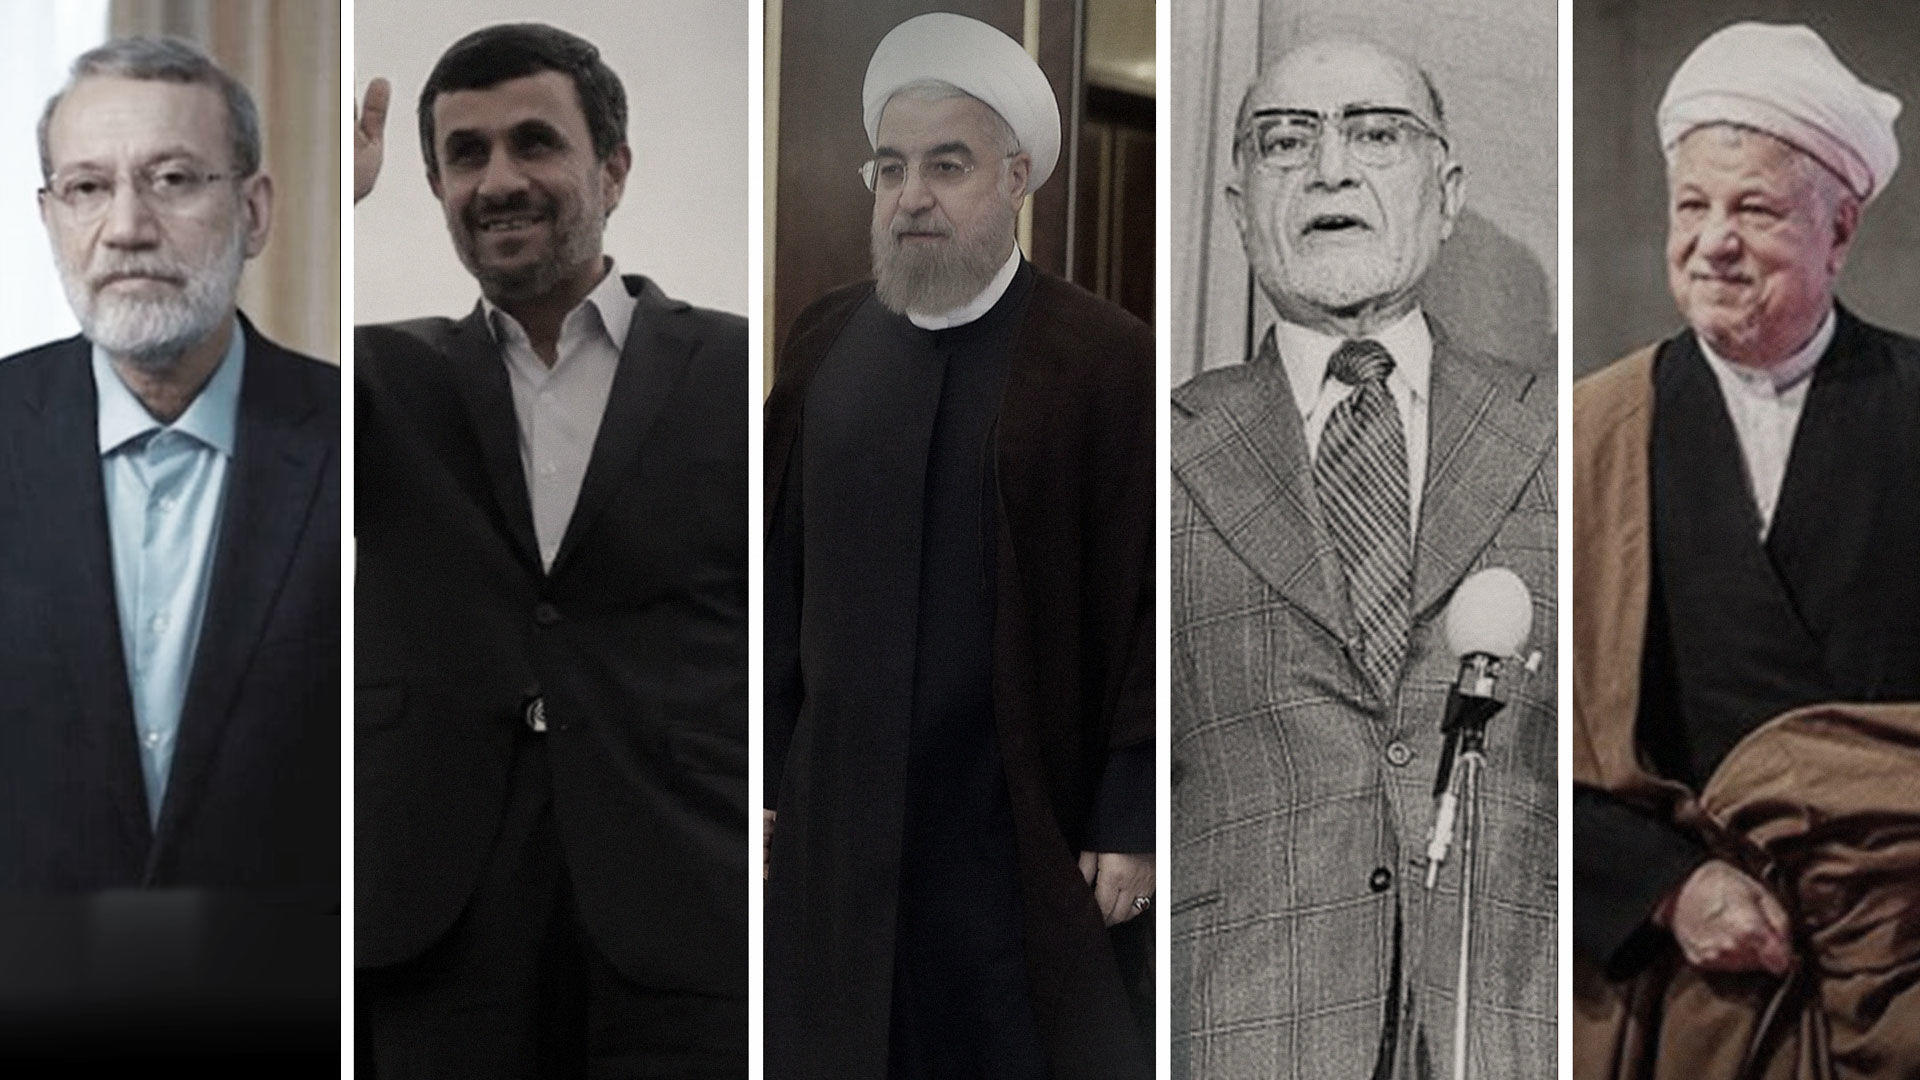  از بازرگان تا احمدی نژاد و روحانی چگونه رد صلاحیت شدند؟
